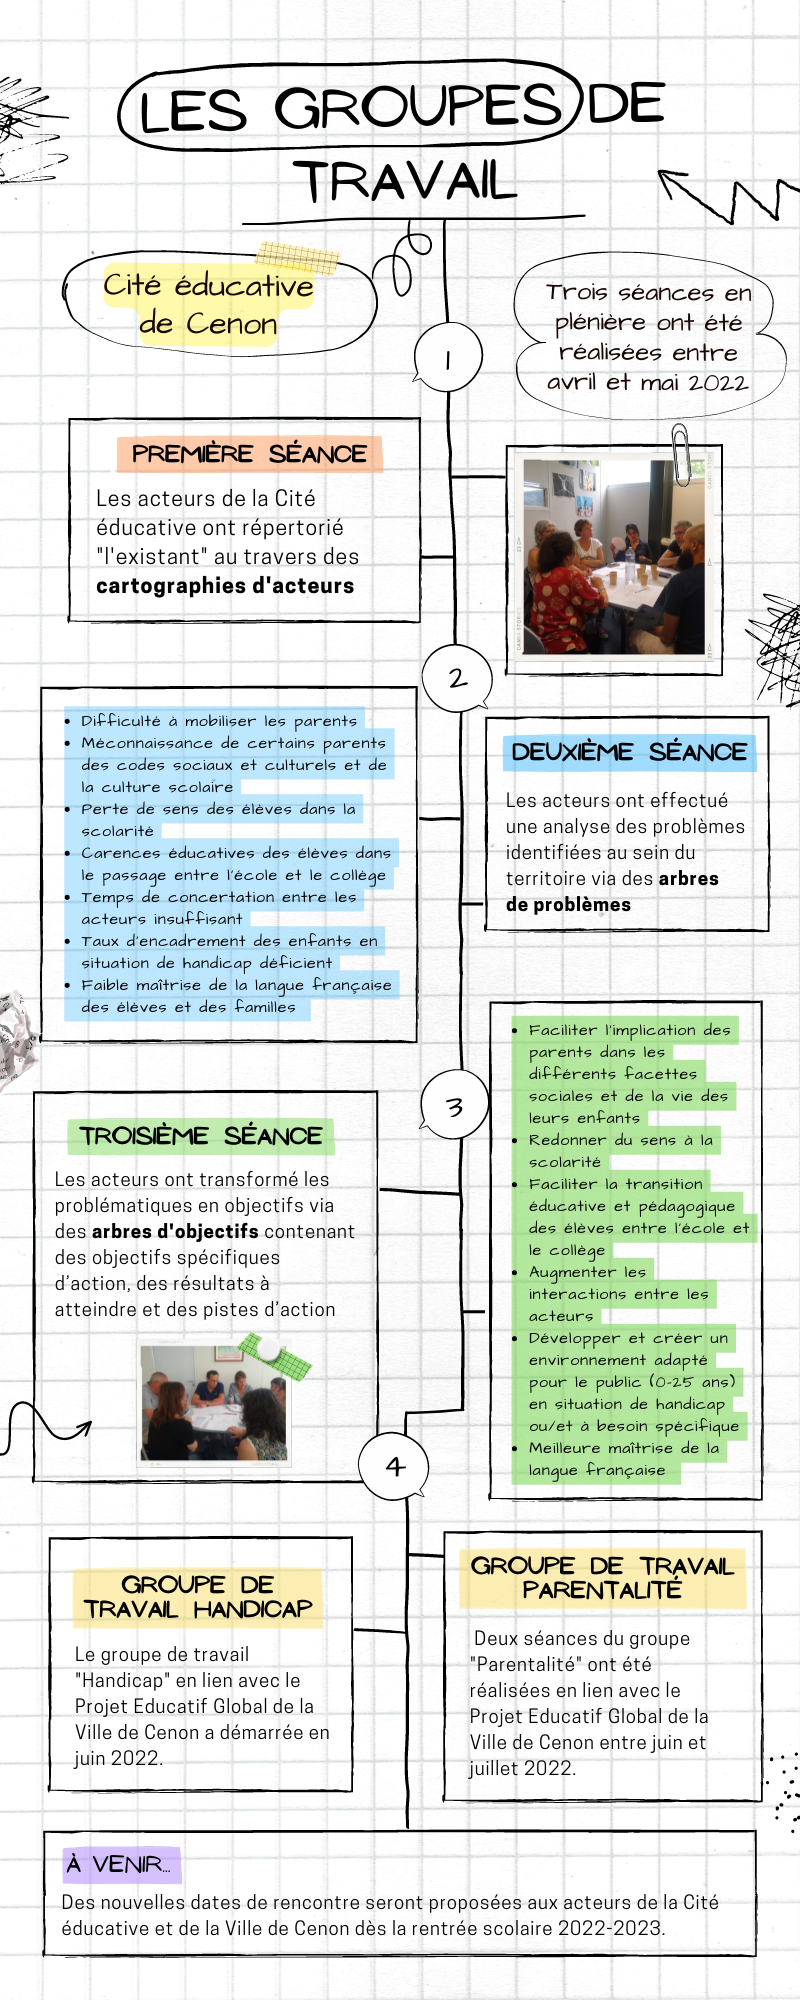 Infographie récapitulative du travail partenarial de la Cité éducative de Cenon